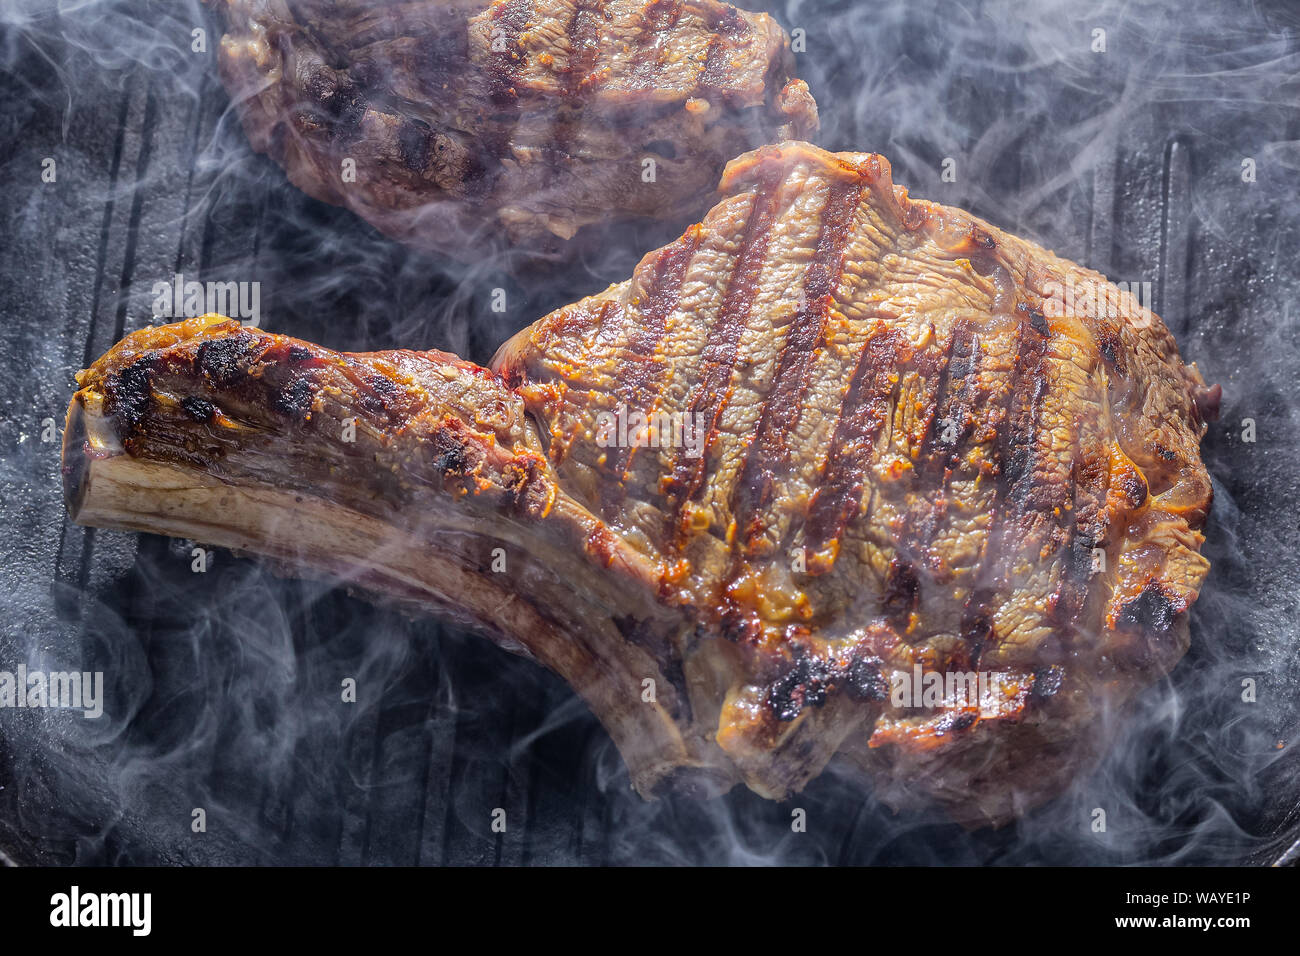 Fumo e vapore aumento da una bistecca beaf sul grill pan Foto Stock